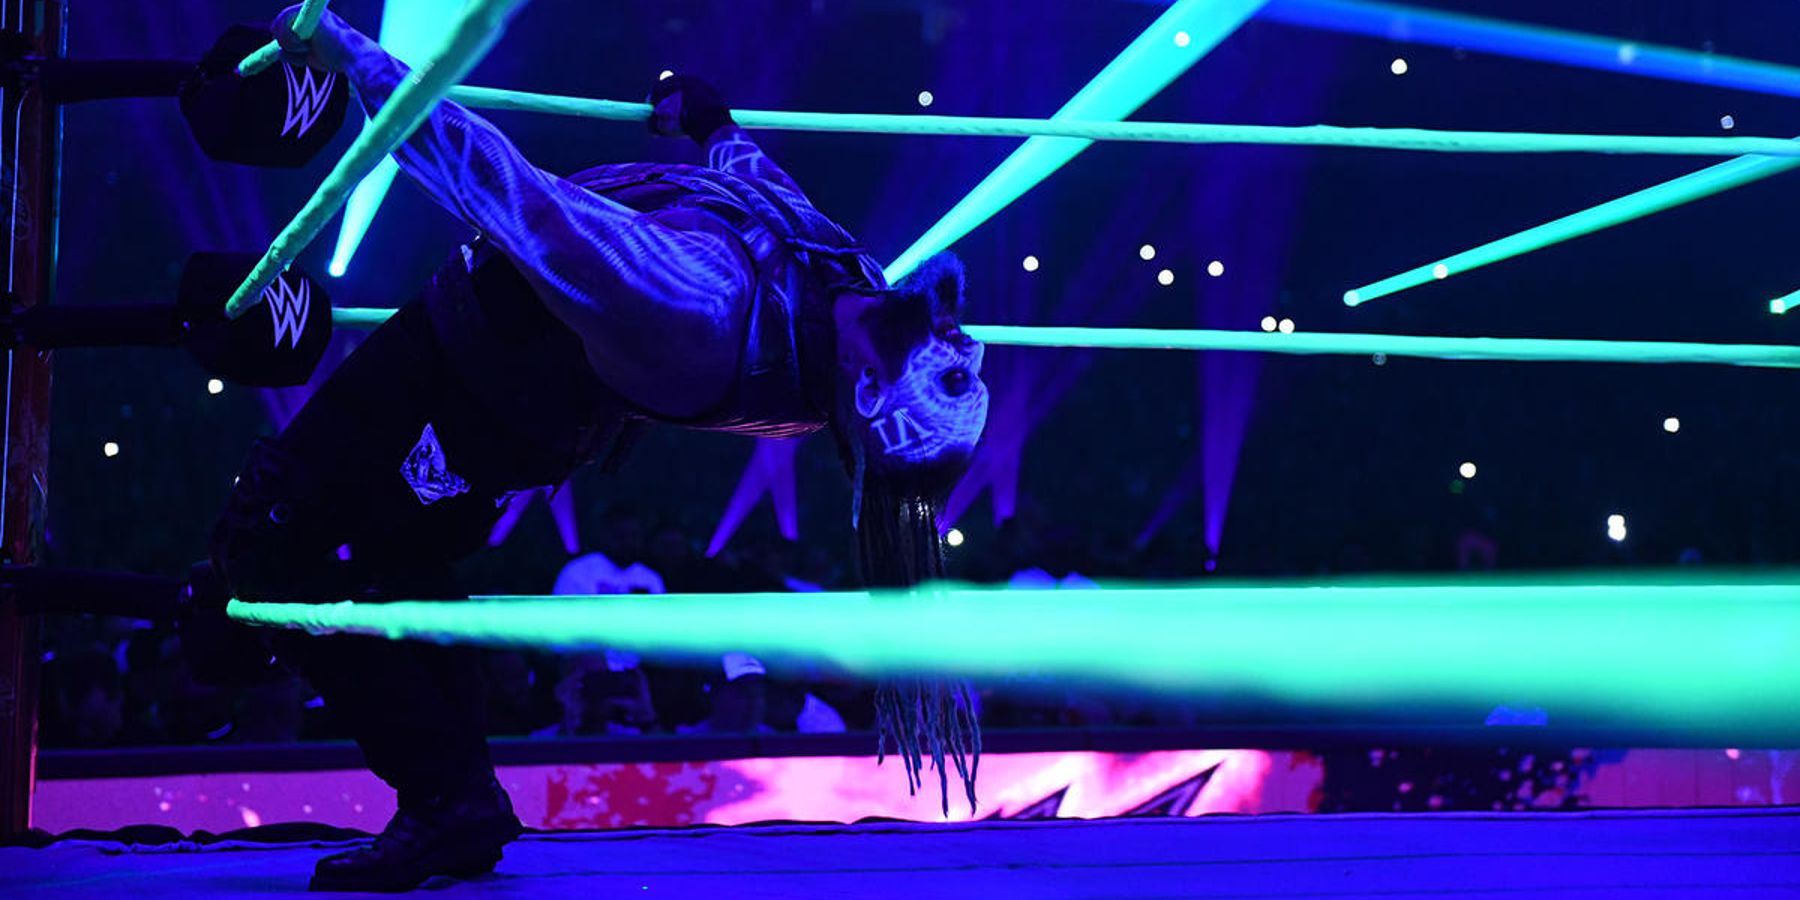 Bray Wyatt faz sua pose característica durante sua entrada no WWE Royal Rumble em 2023. Ele derrotaria LA Knight nessa luta.